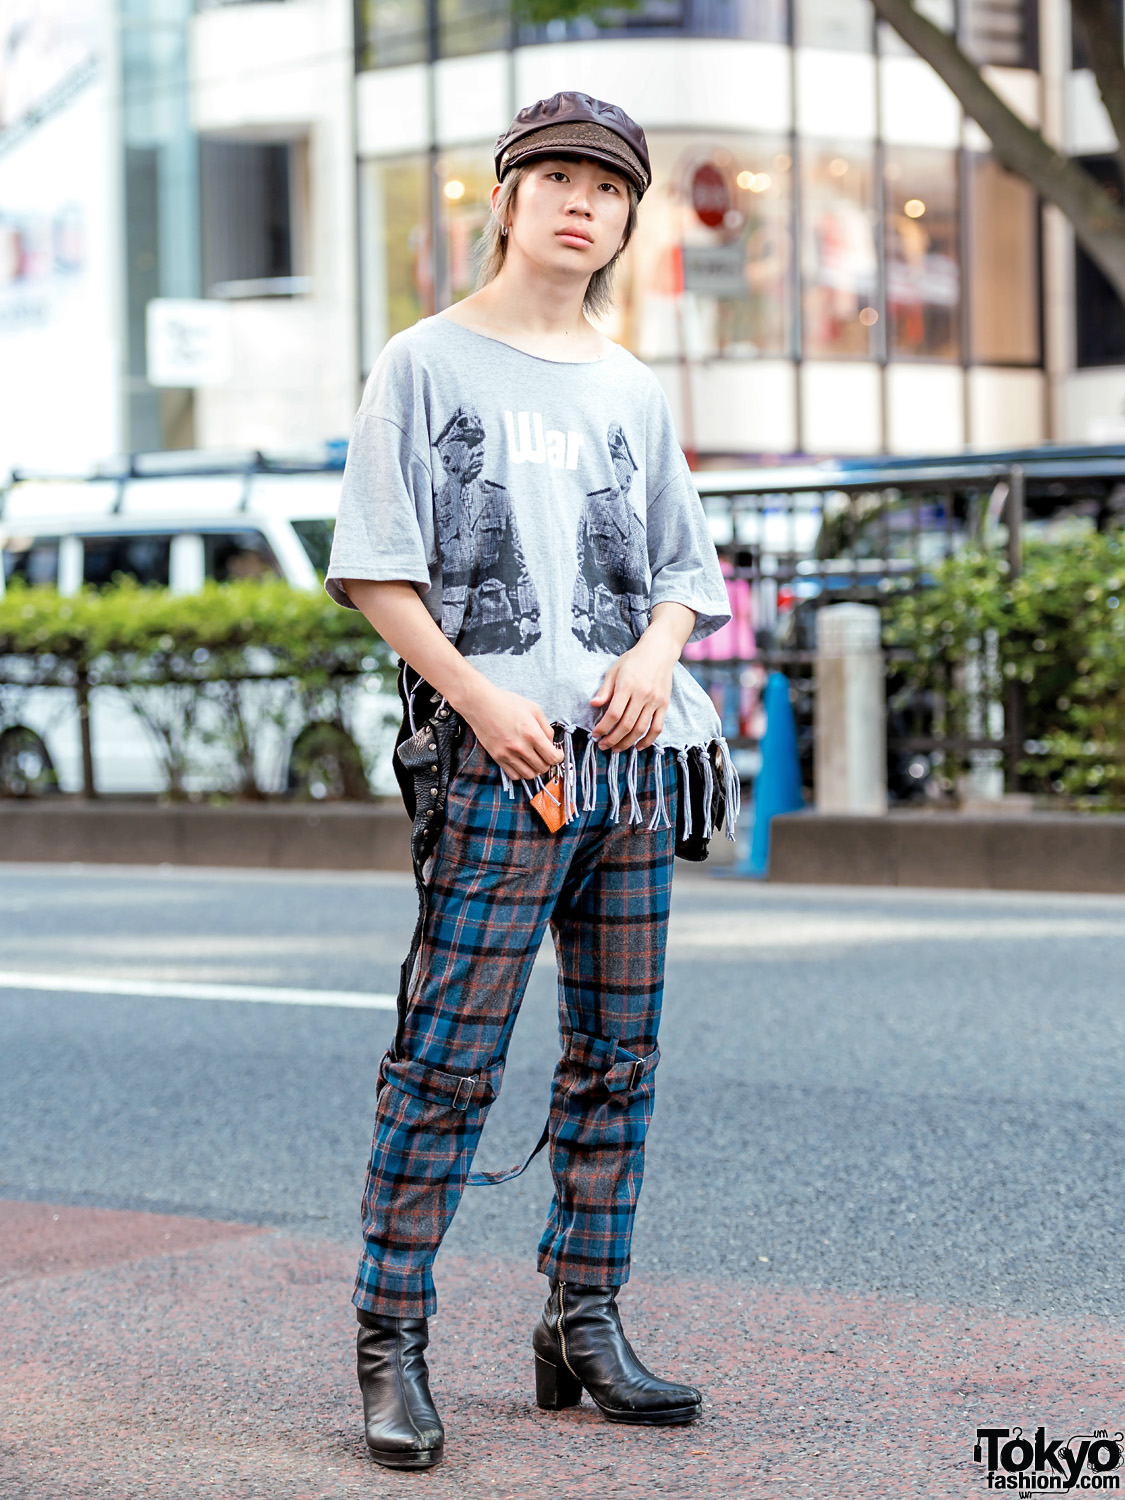 Harajuku Fringe & Plaid Street Style w/ Banal Chic Bizarre, Phingerin Bondage Pants, Leather Boots, Newsboy Cap & Vintage Waist Bag